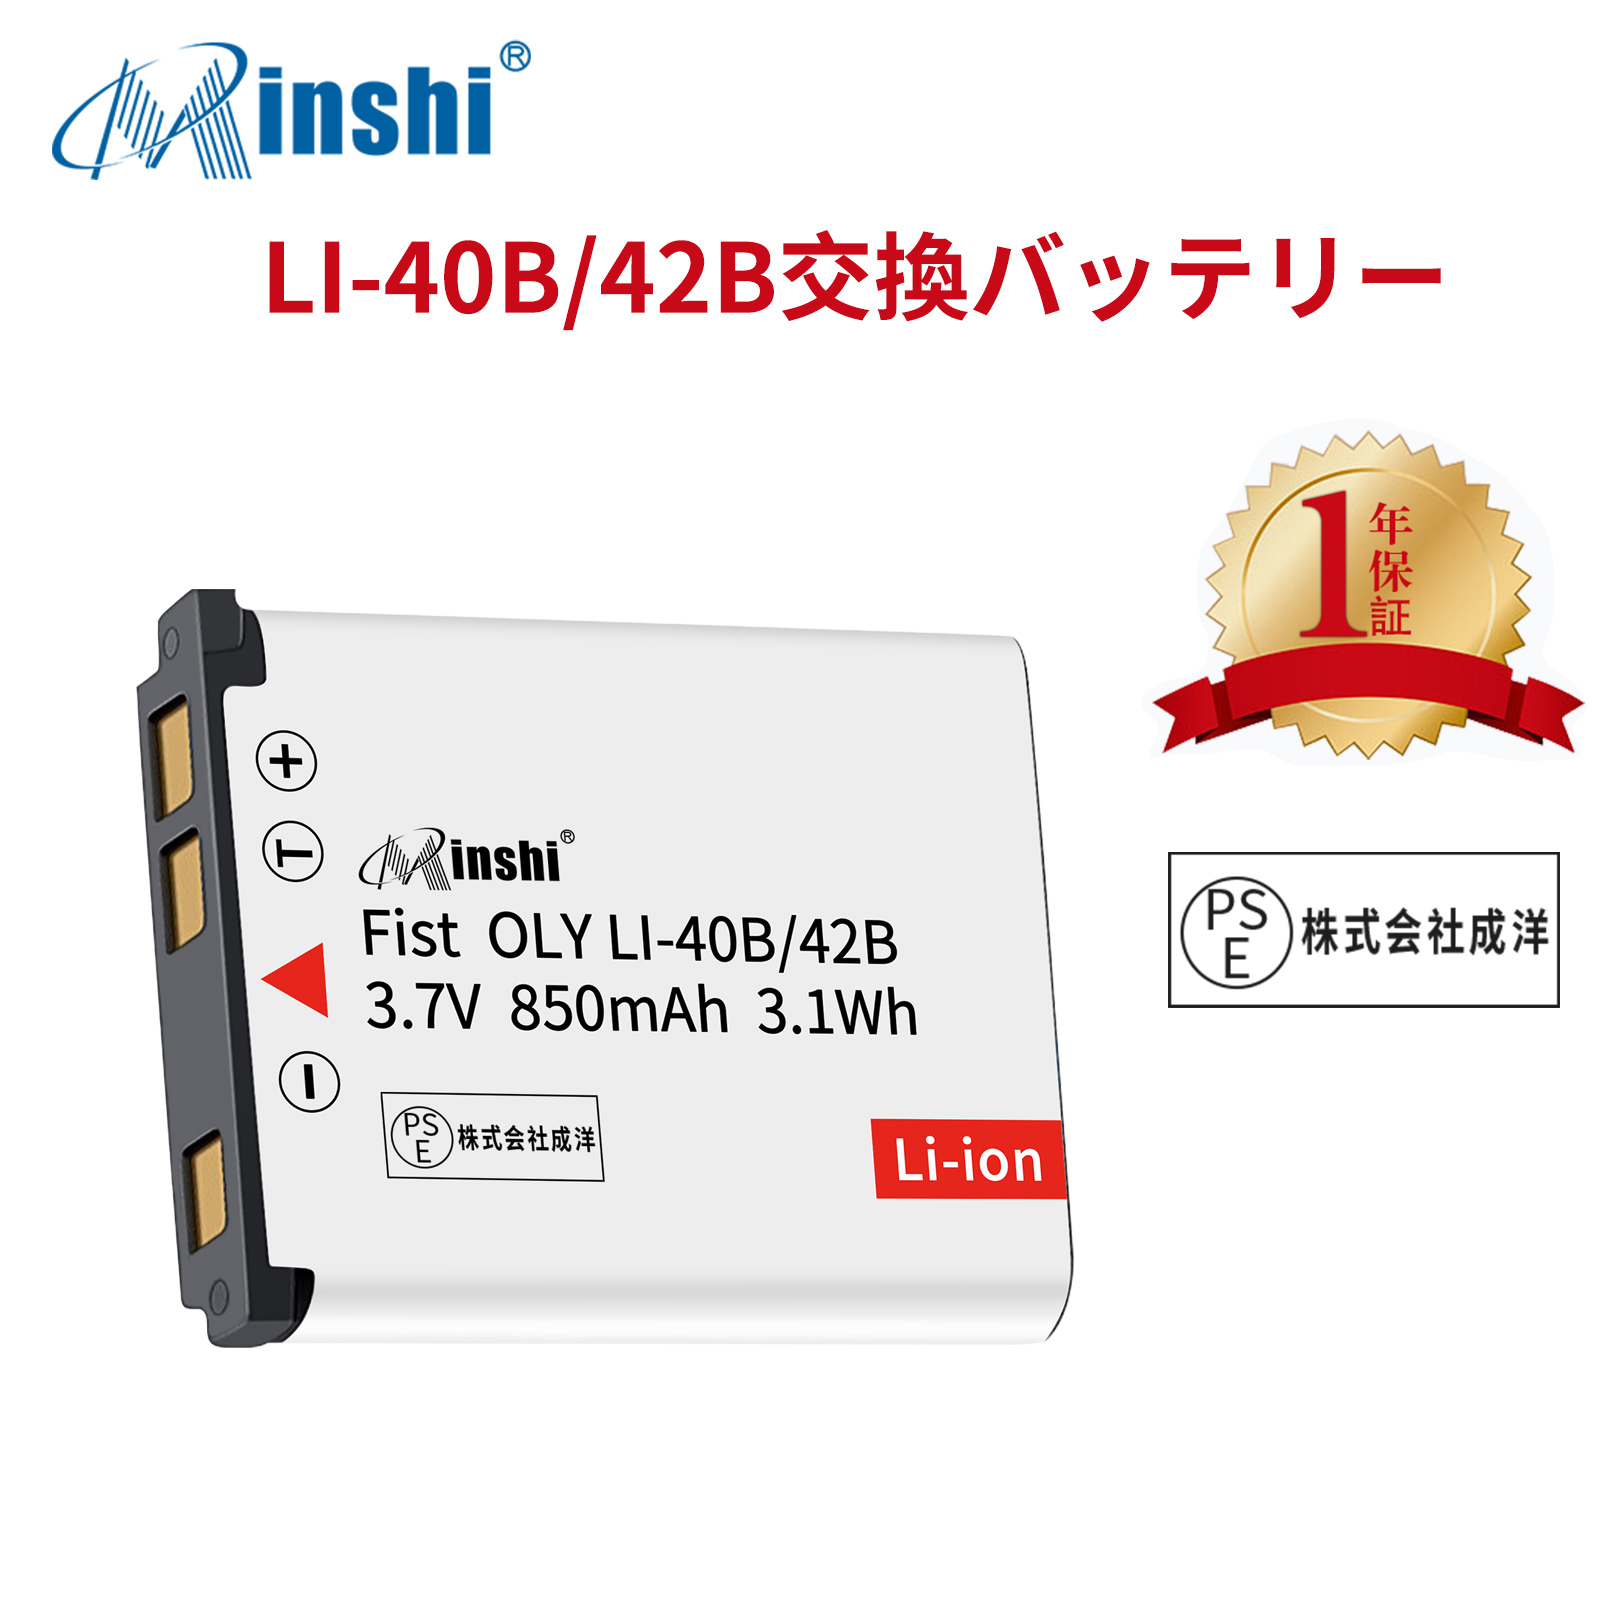 【1年保証】minshi FinePix XPシリーズ【850mAh 3.7V】PSE認定済 高品質LI-42B互換バッテリーWGZ